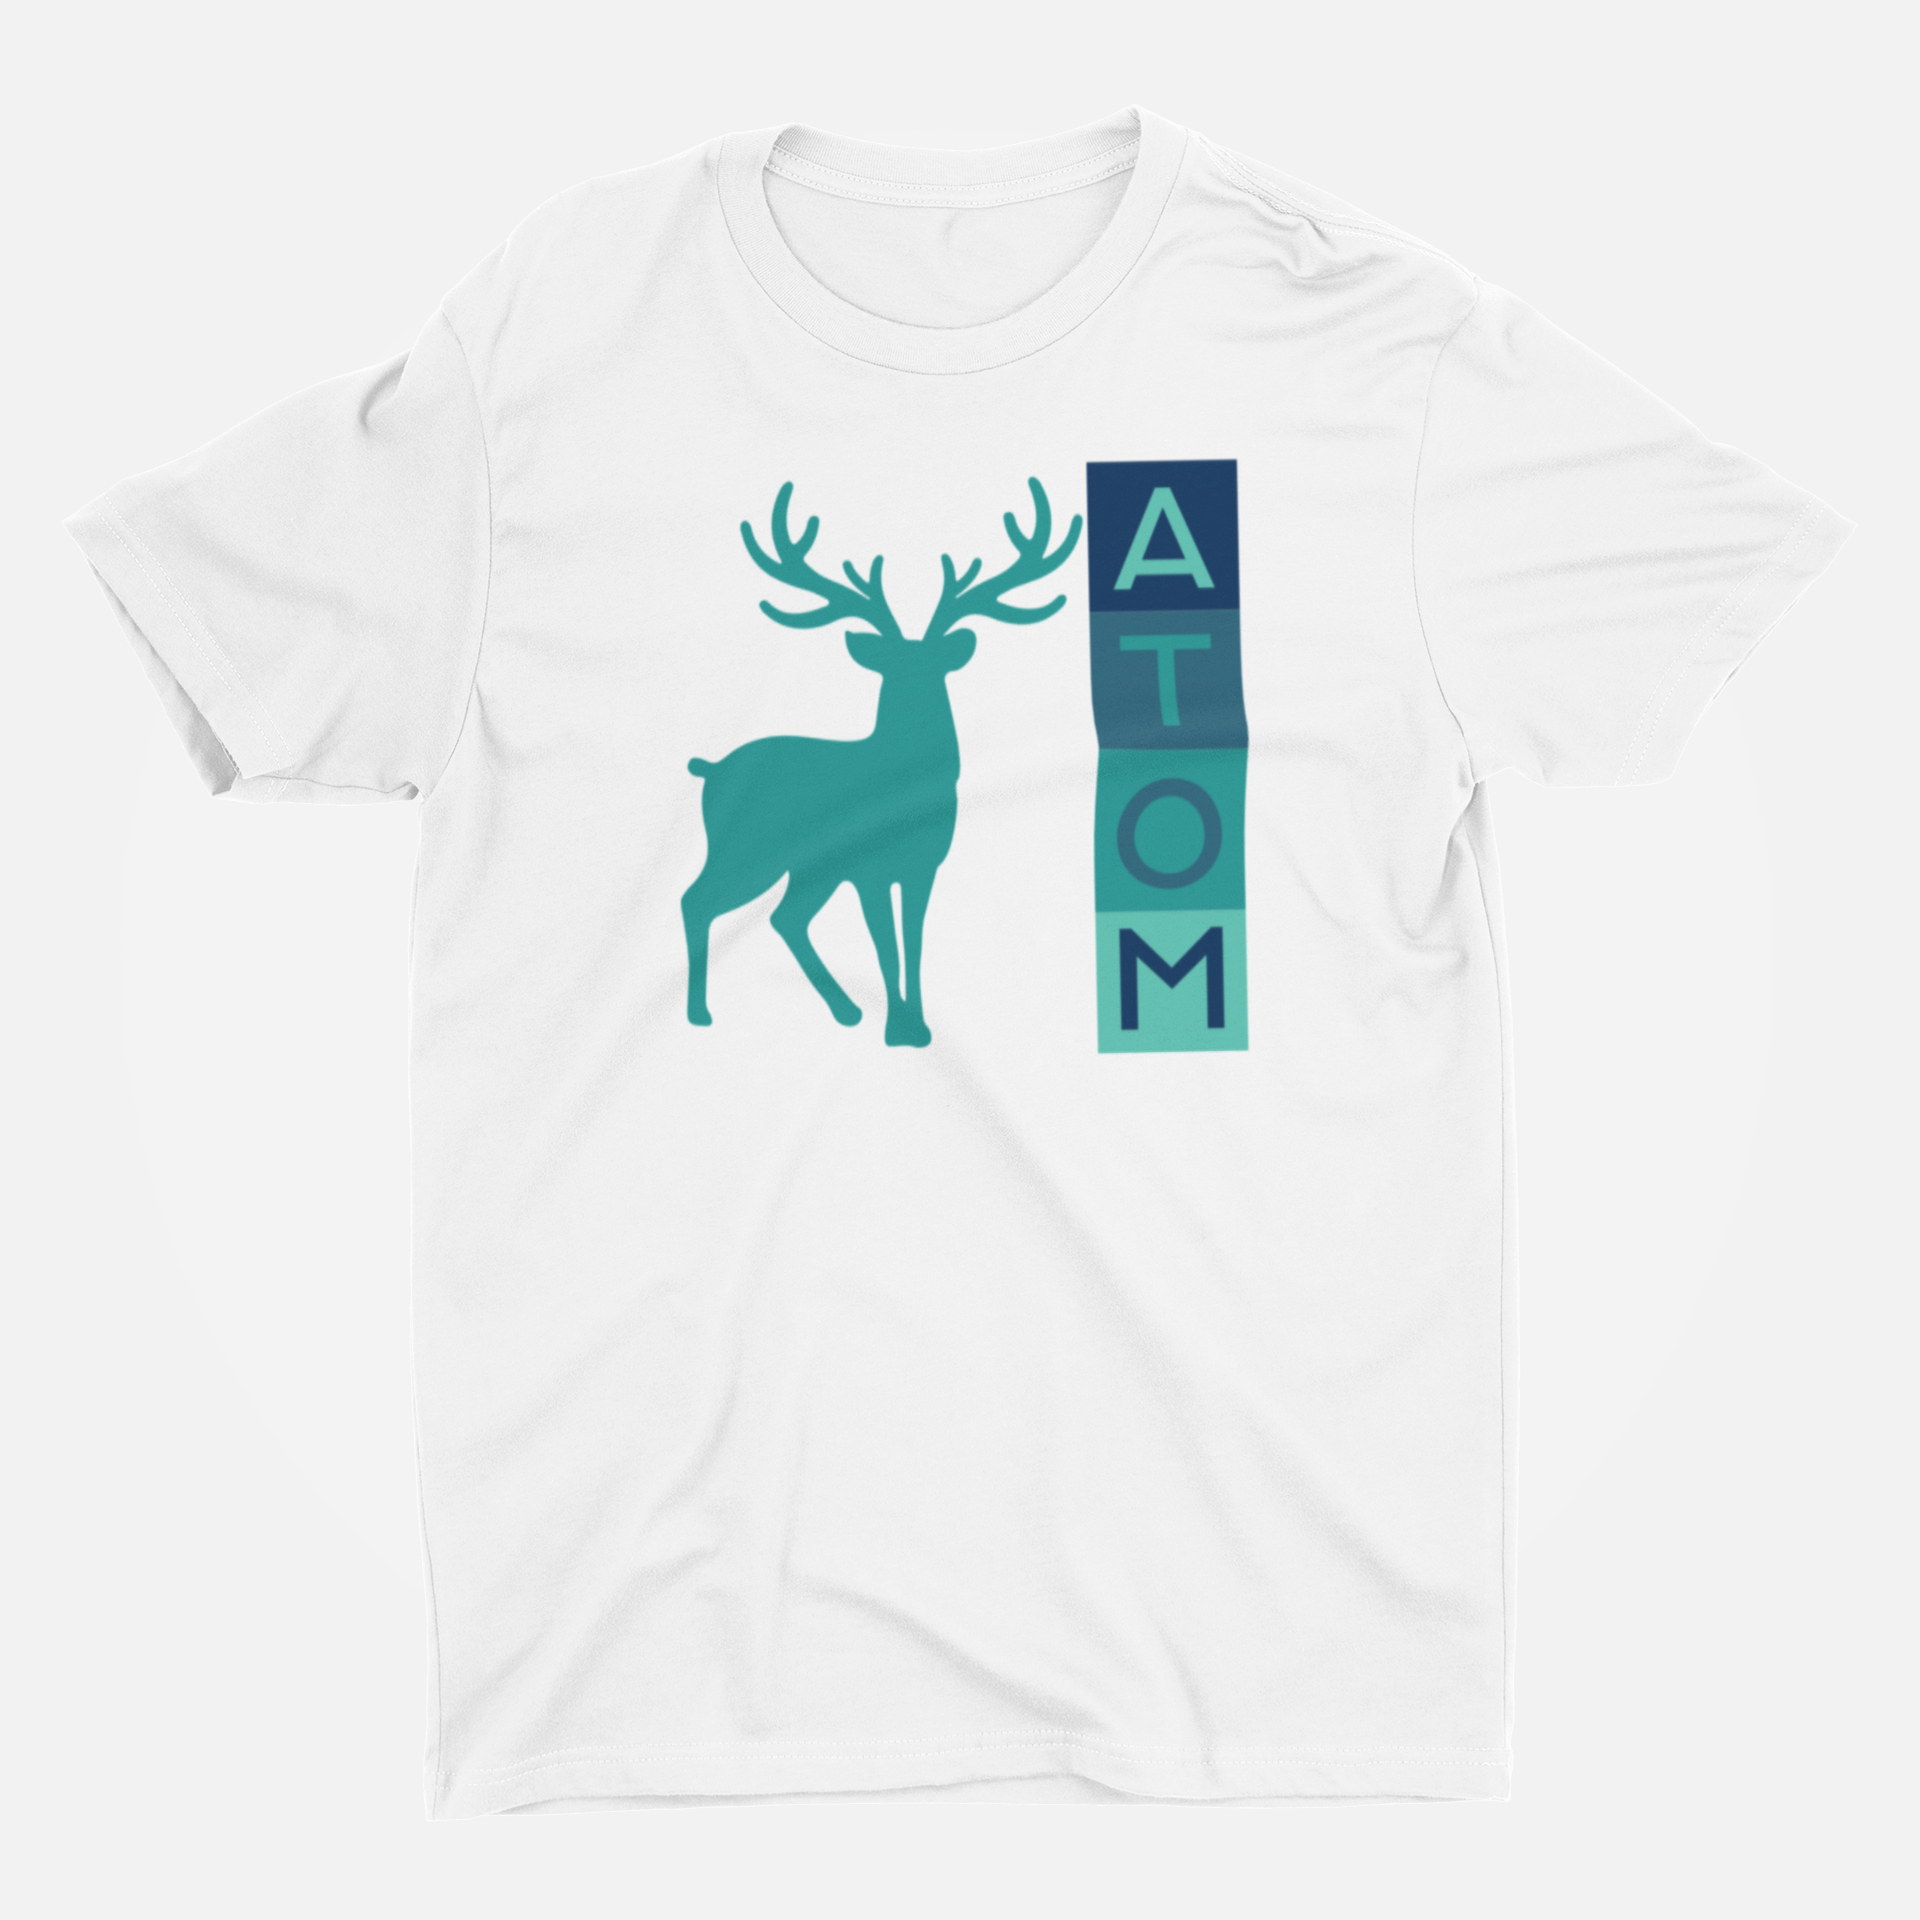 ATOM Signature Vertical Box Design Round Neck T-Shirt for Men.